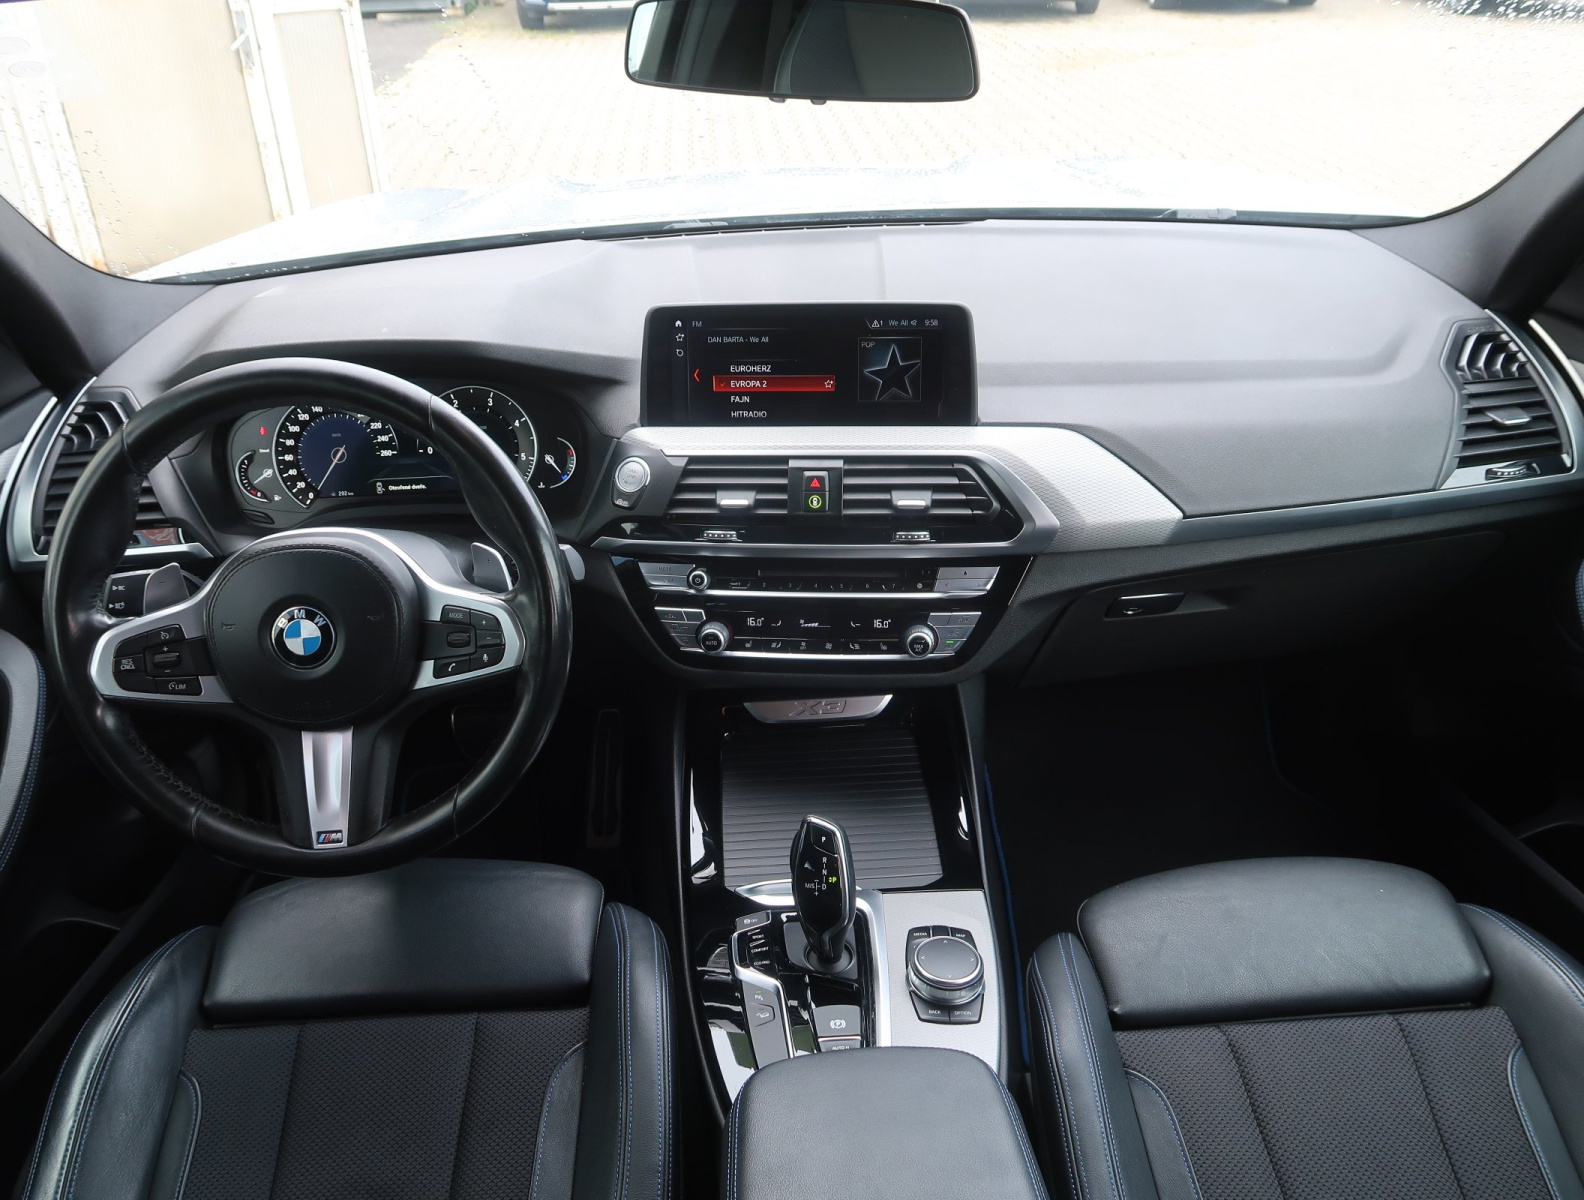 BMW X3, 2018, xDrive20d, 140kW, 4x4